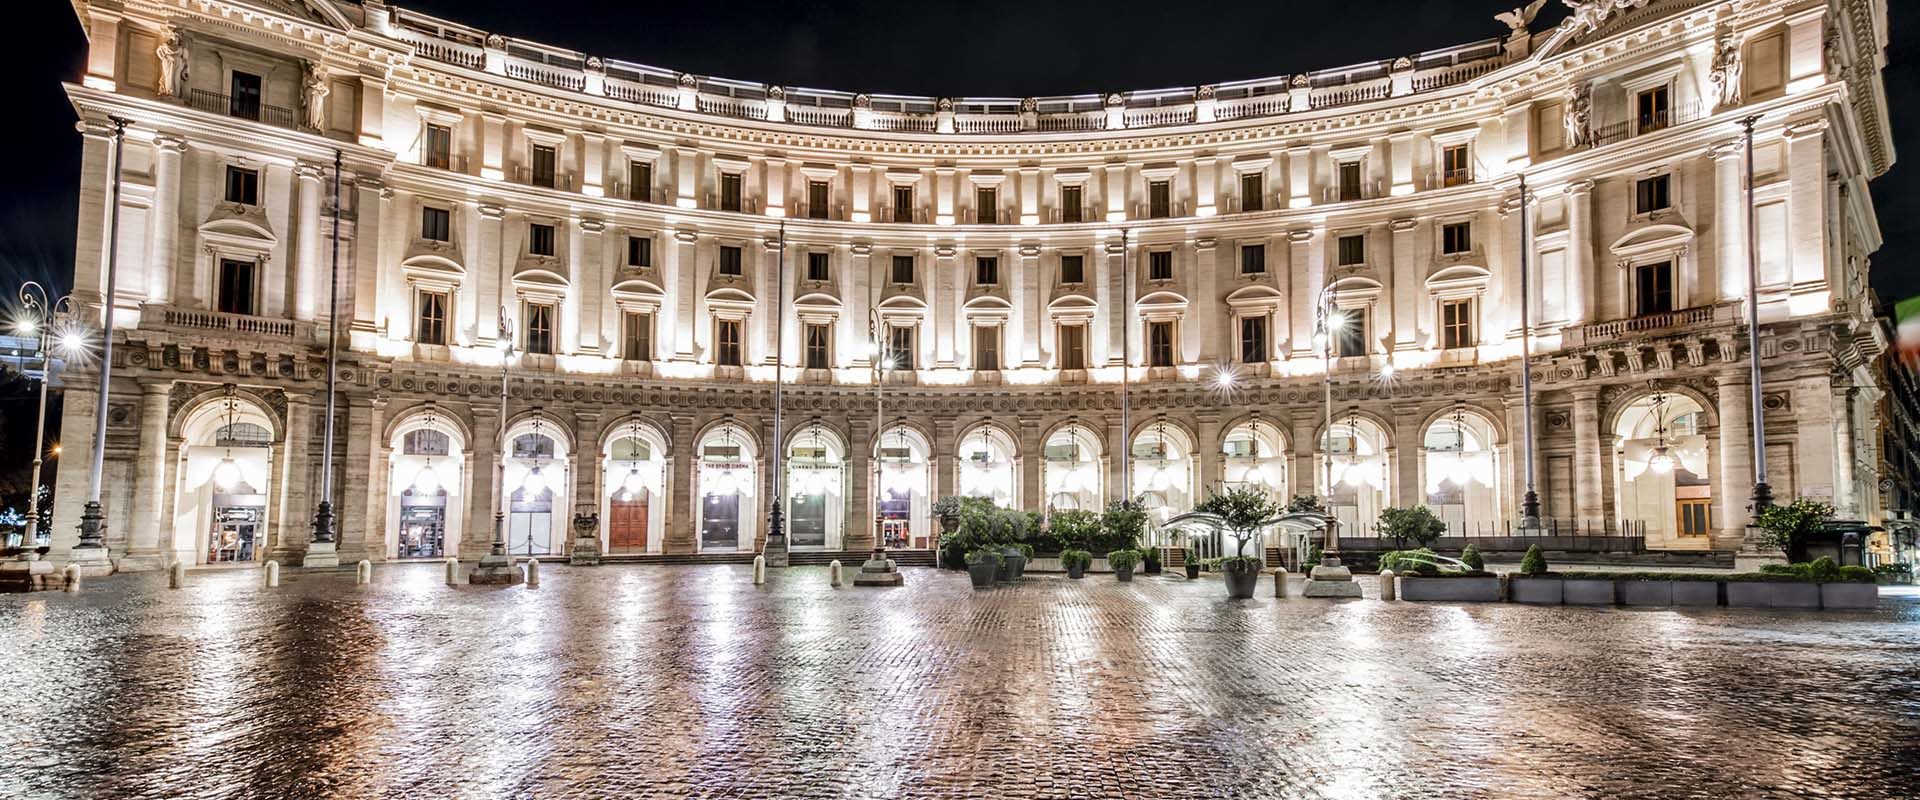 Exterior of the Palazzo Naiadi hotel in Rome at night